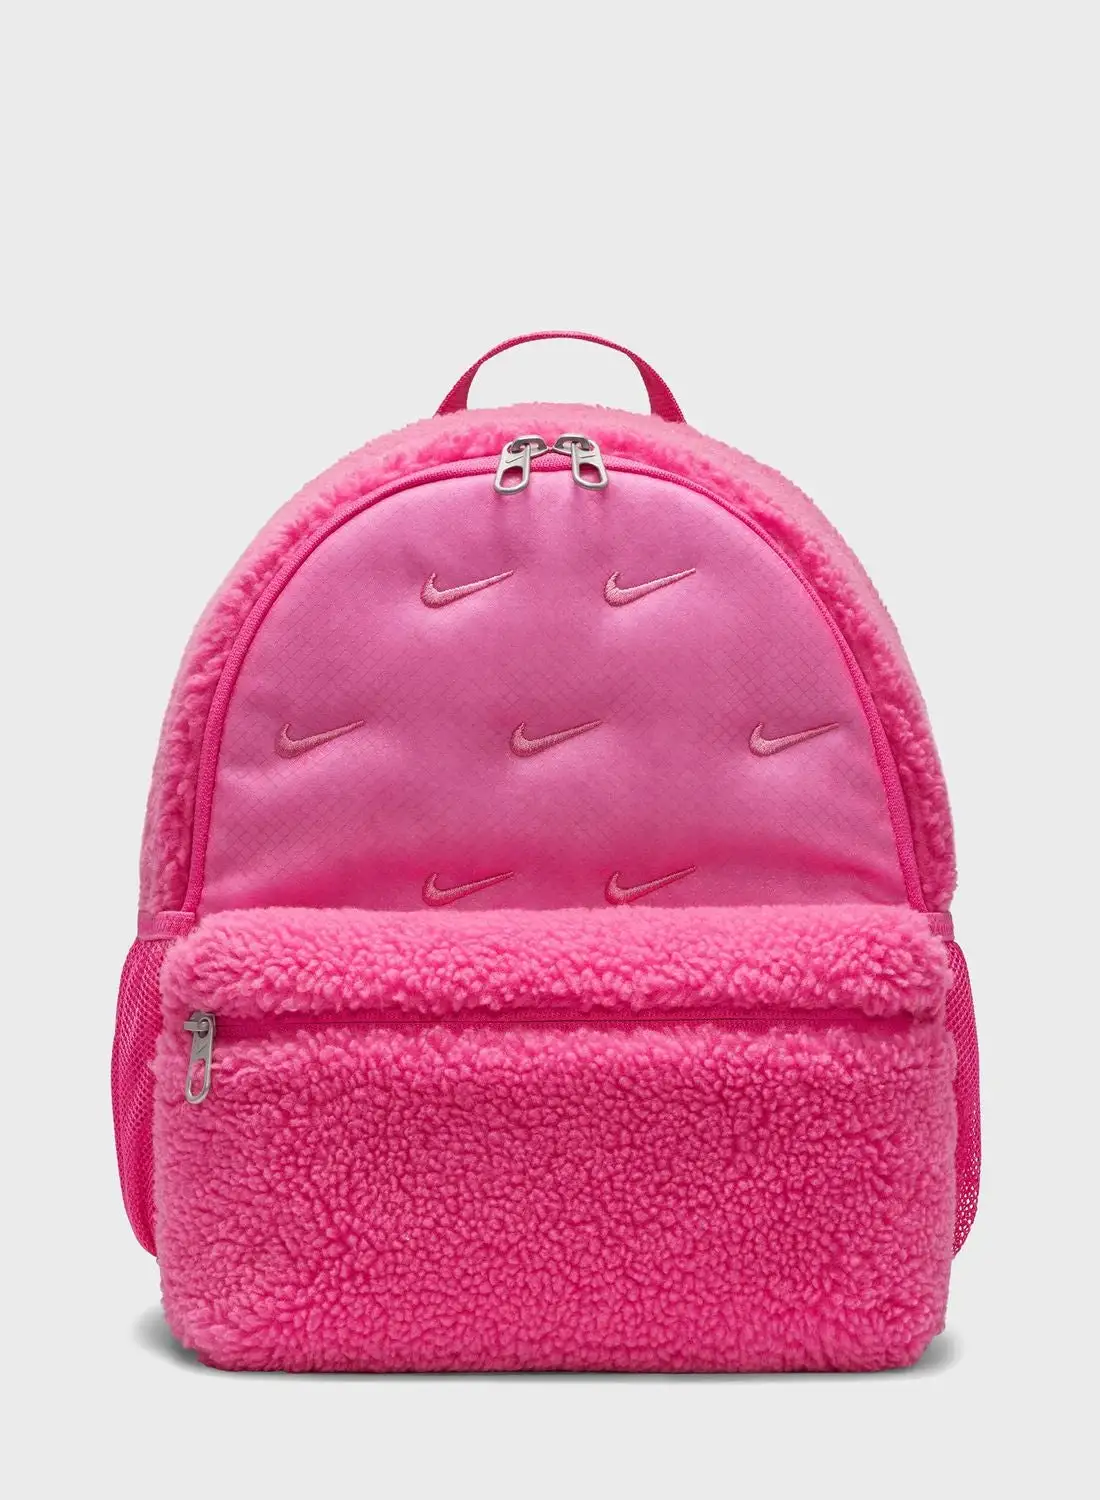 Nike Brasilia Sherpa Mini Backpack